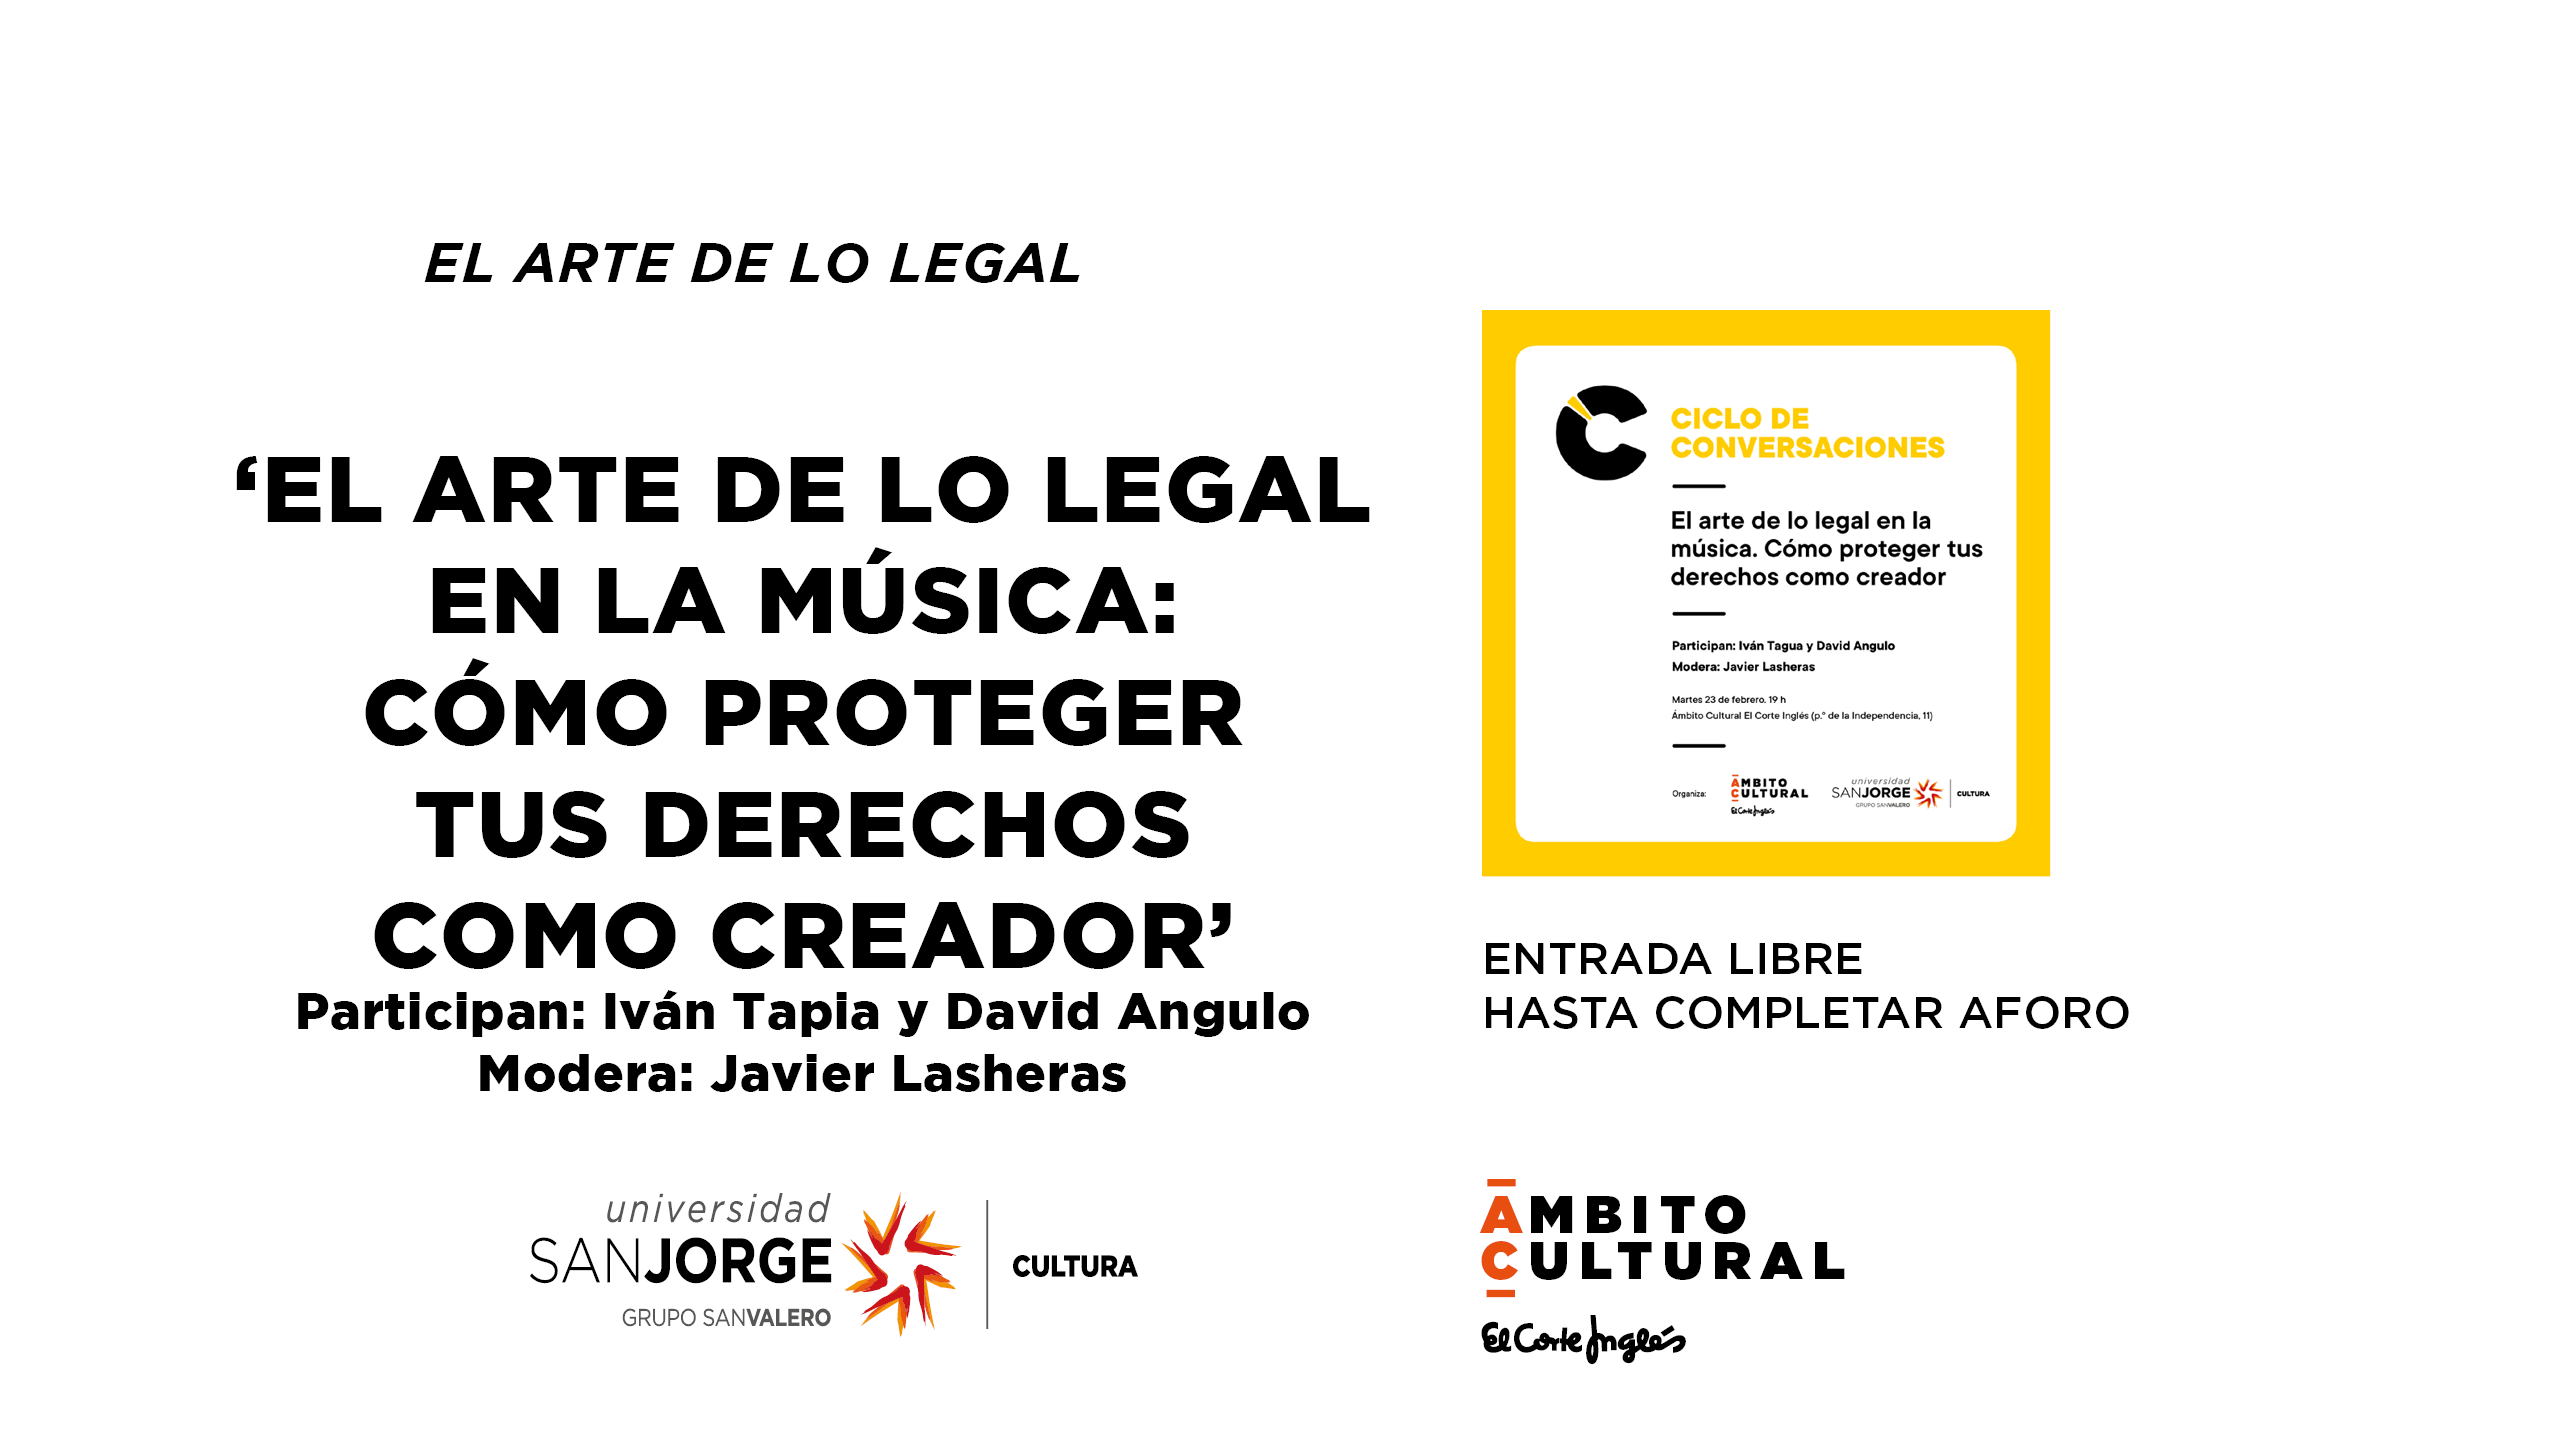 Imagen del evento EL ARTE DE LO LEGAL EN LA MÚSICA CON IVÁN TAPIA, DAVID ANGULO Y JAVIER LASHERAS.